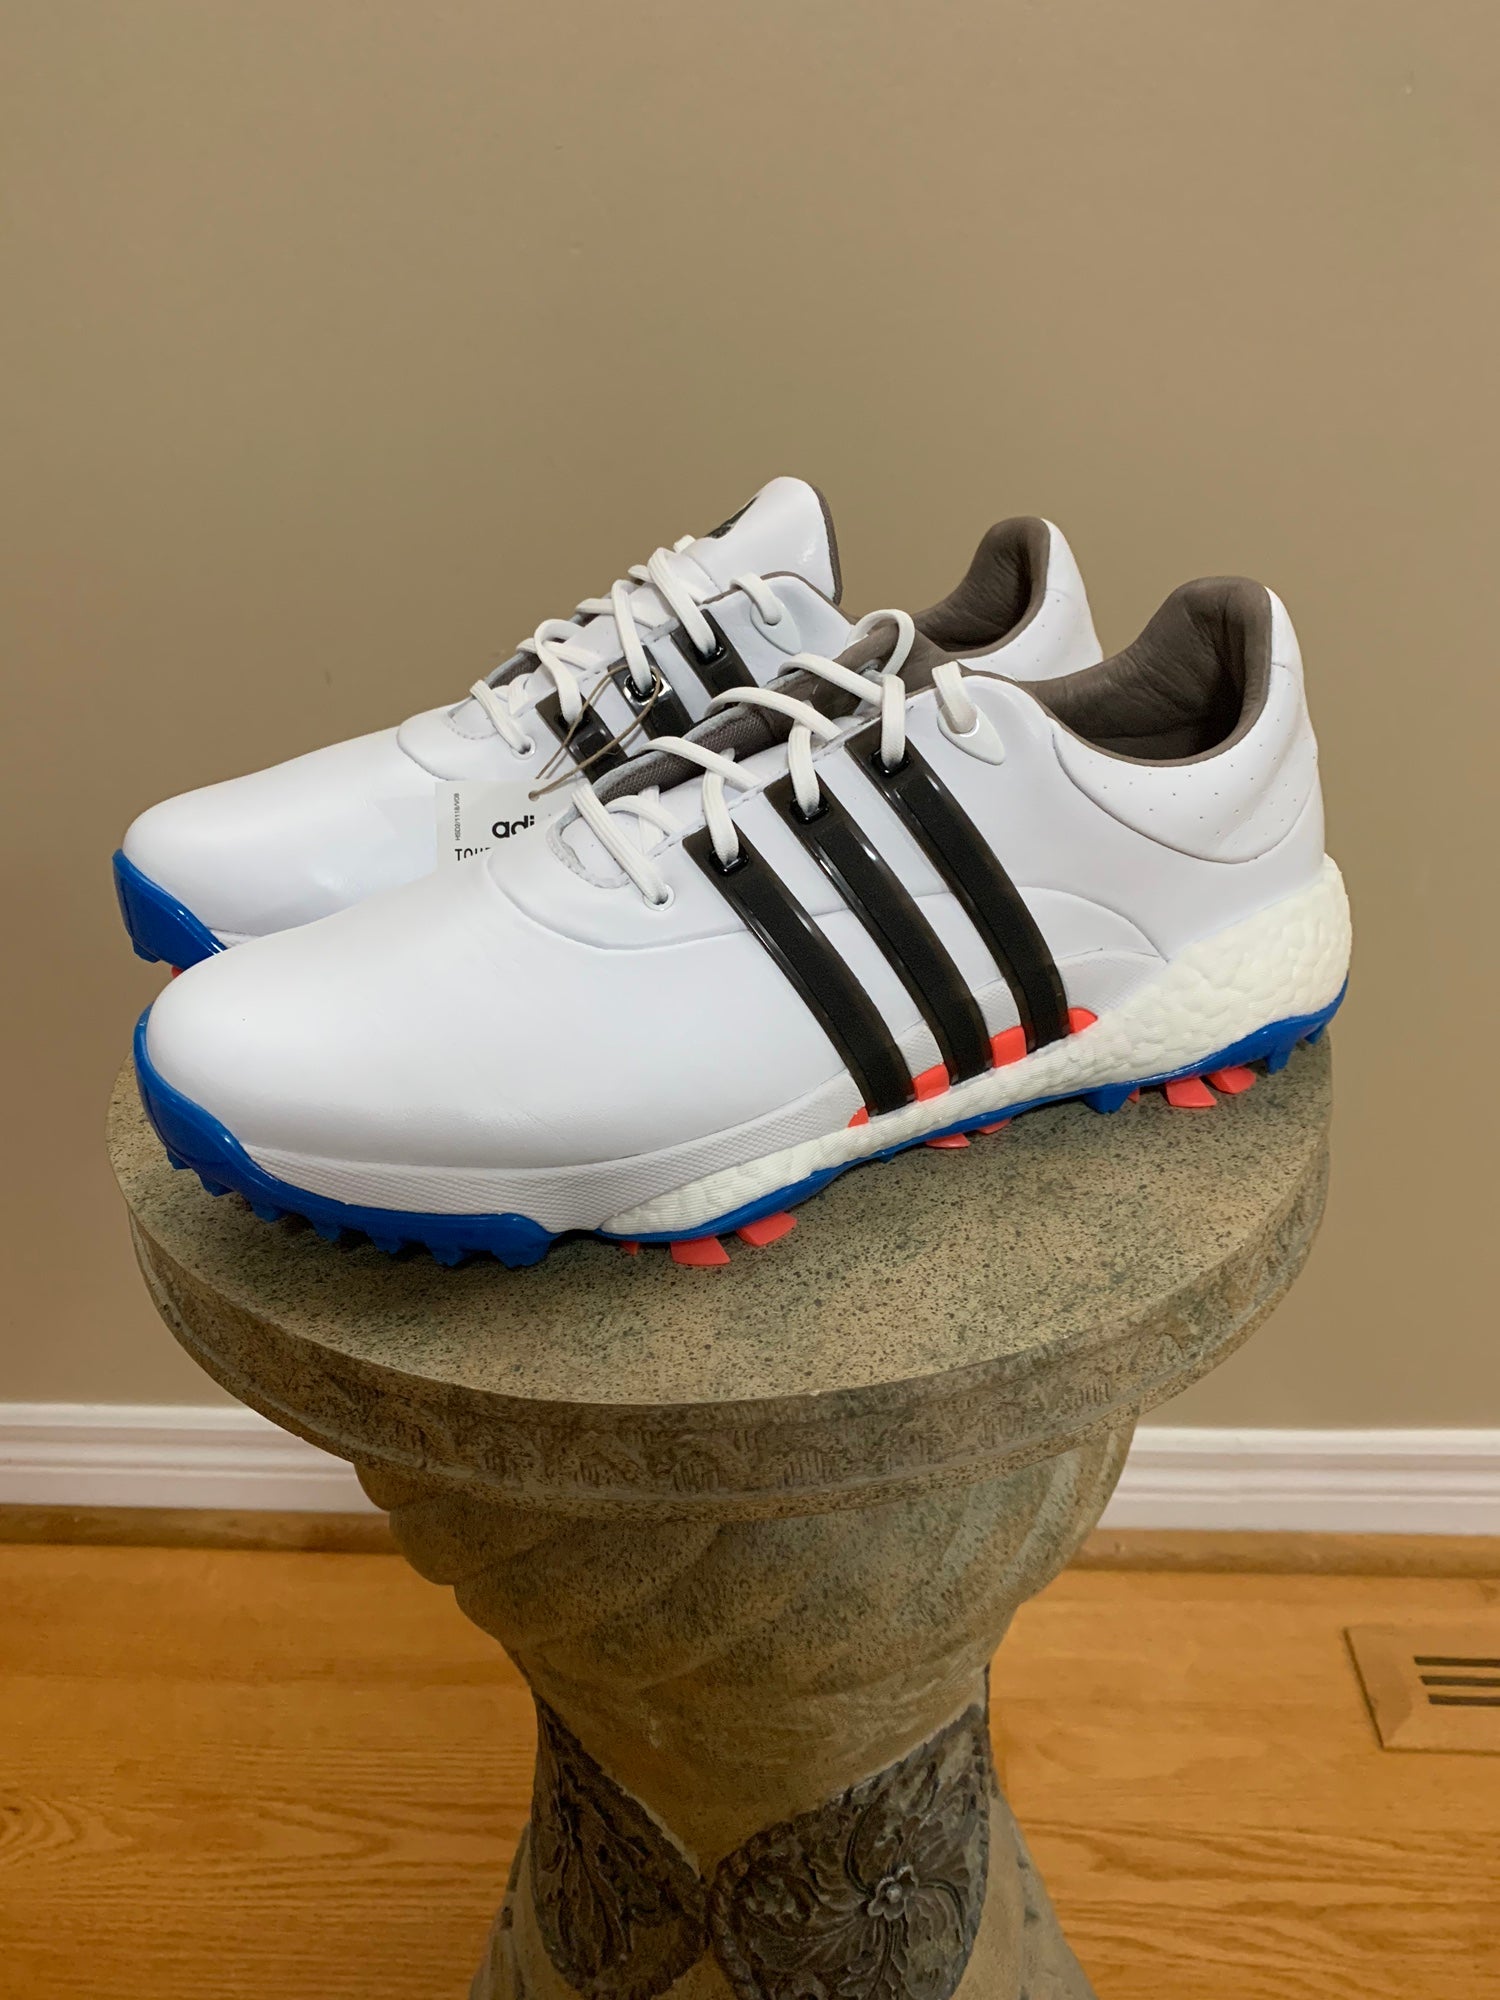 Opsplitsen Opmerkelijk gaan beslissen Adidas Tour 360 Boost Golf Shoes M11 | SidelineSwap